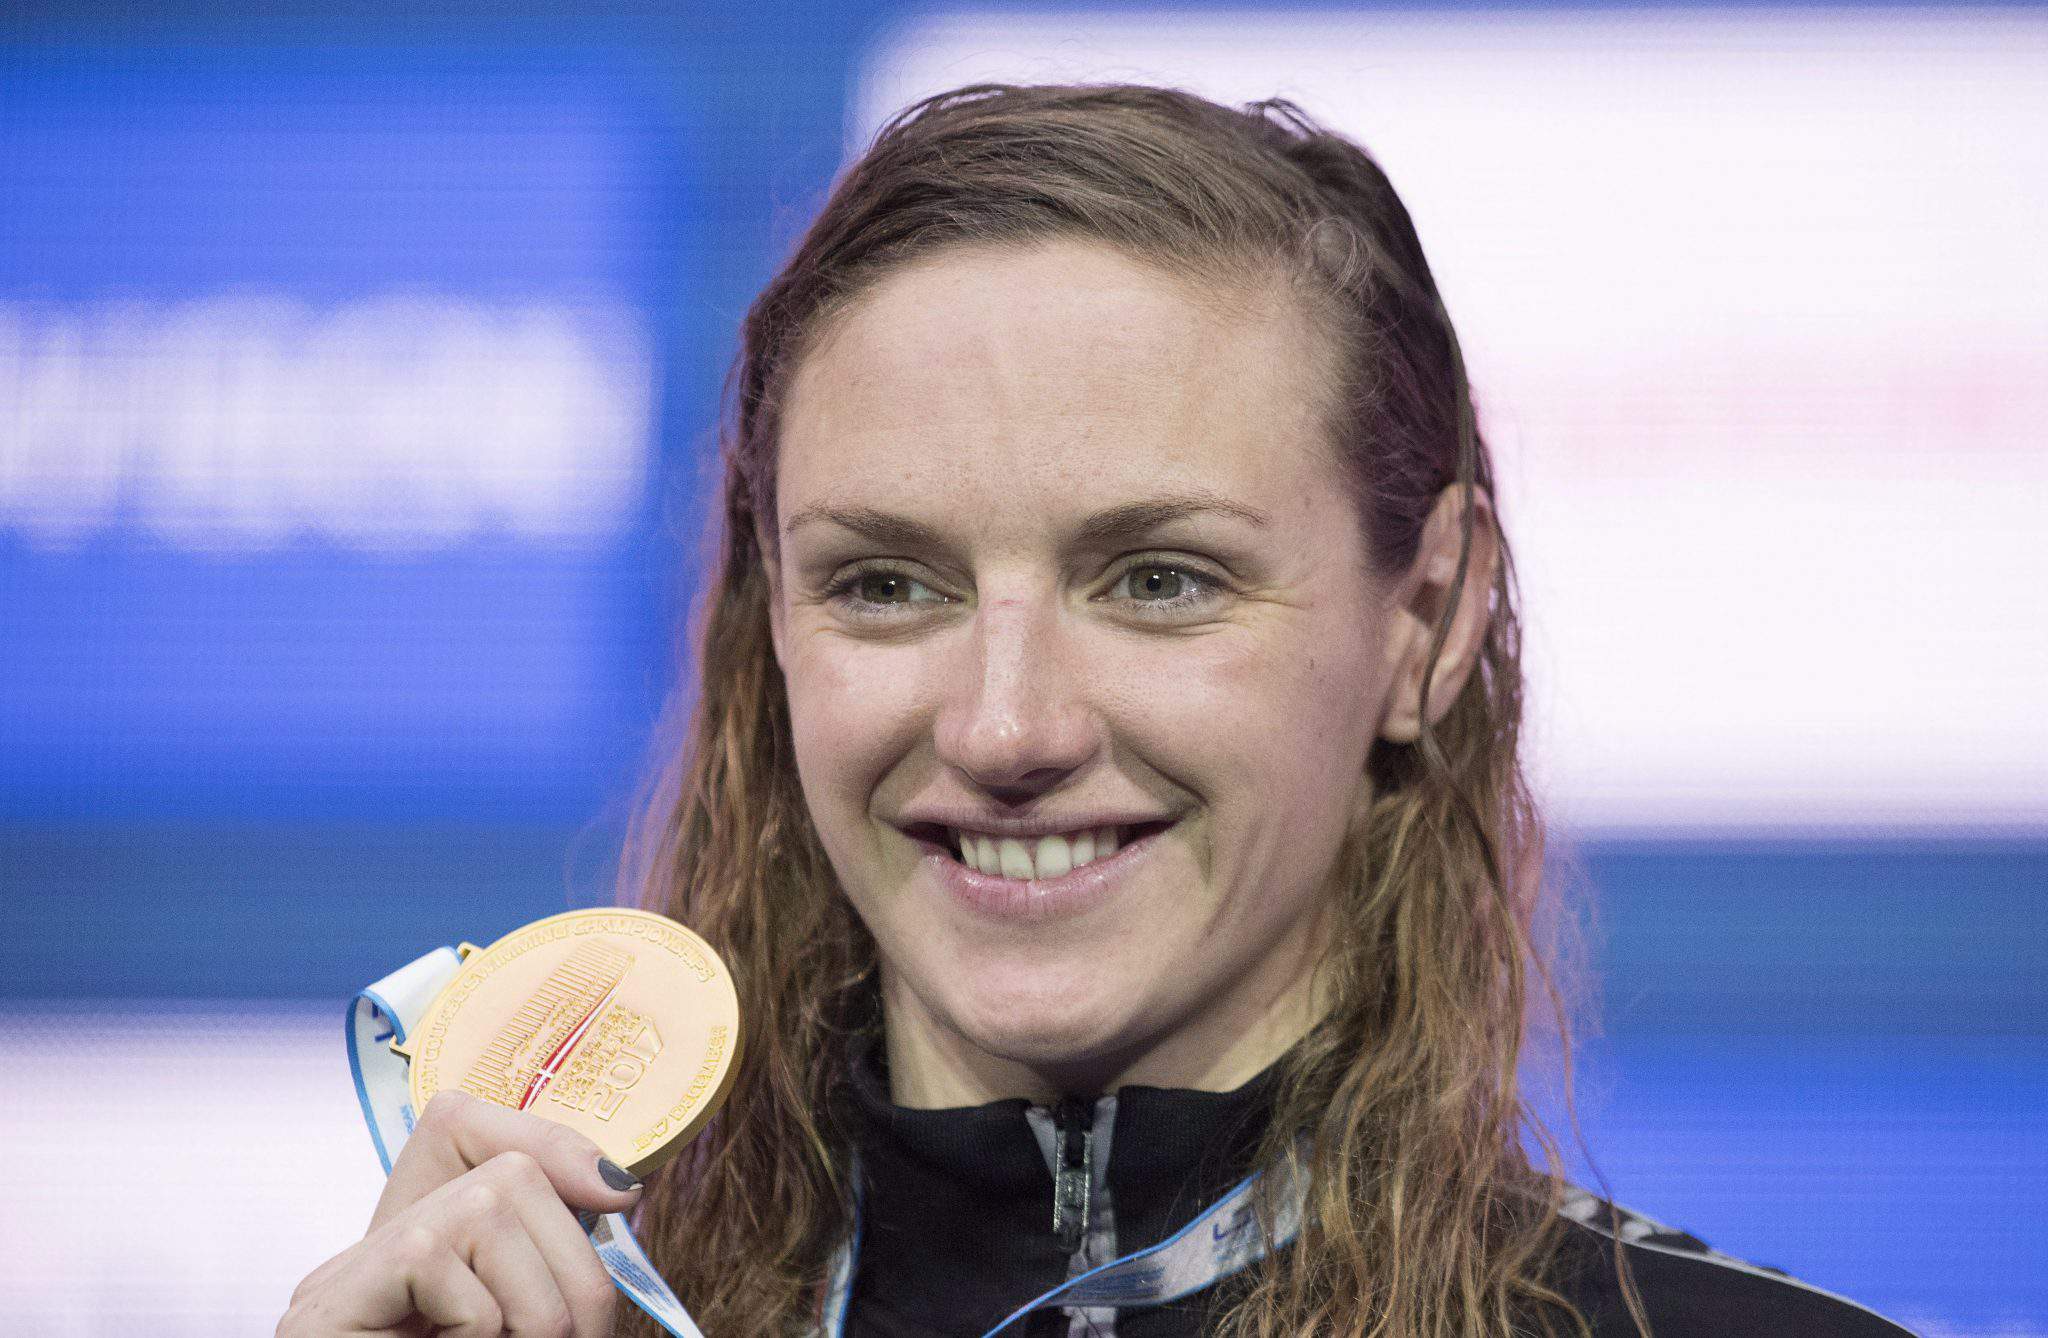 Katinka Hosszú medalie de aur